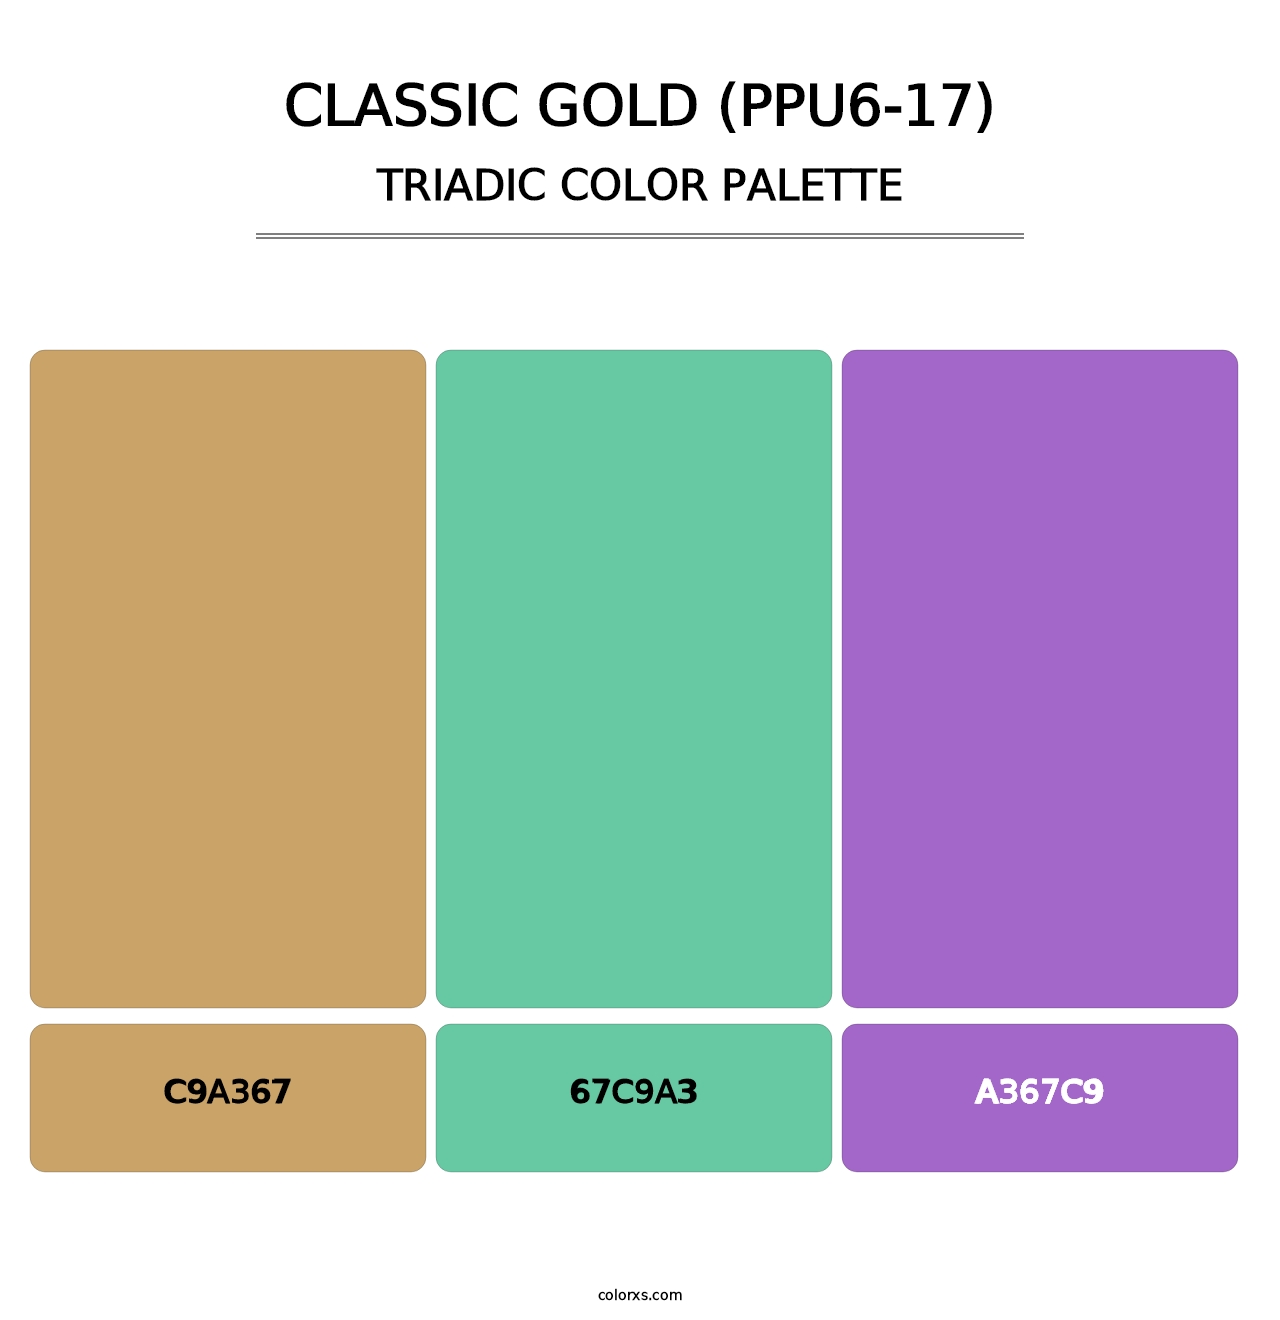 Classic Gold (PPU6-17) - Triadic Color Palette